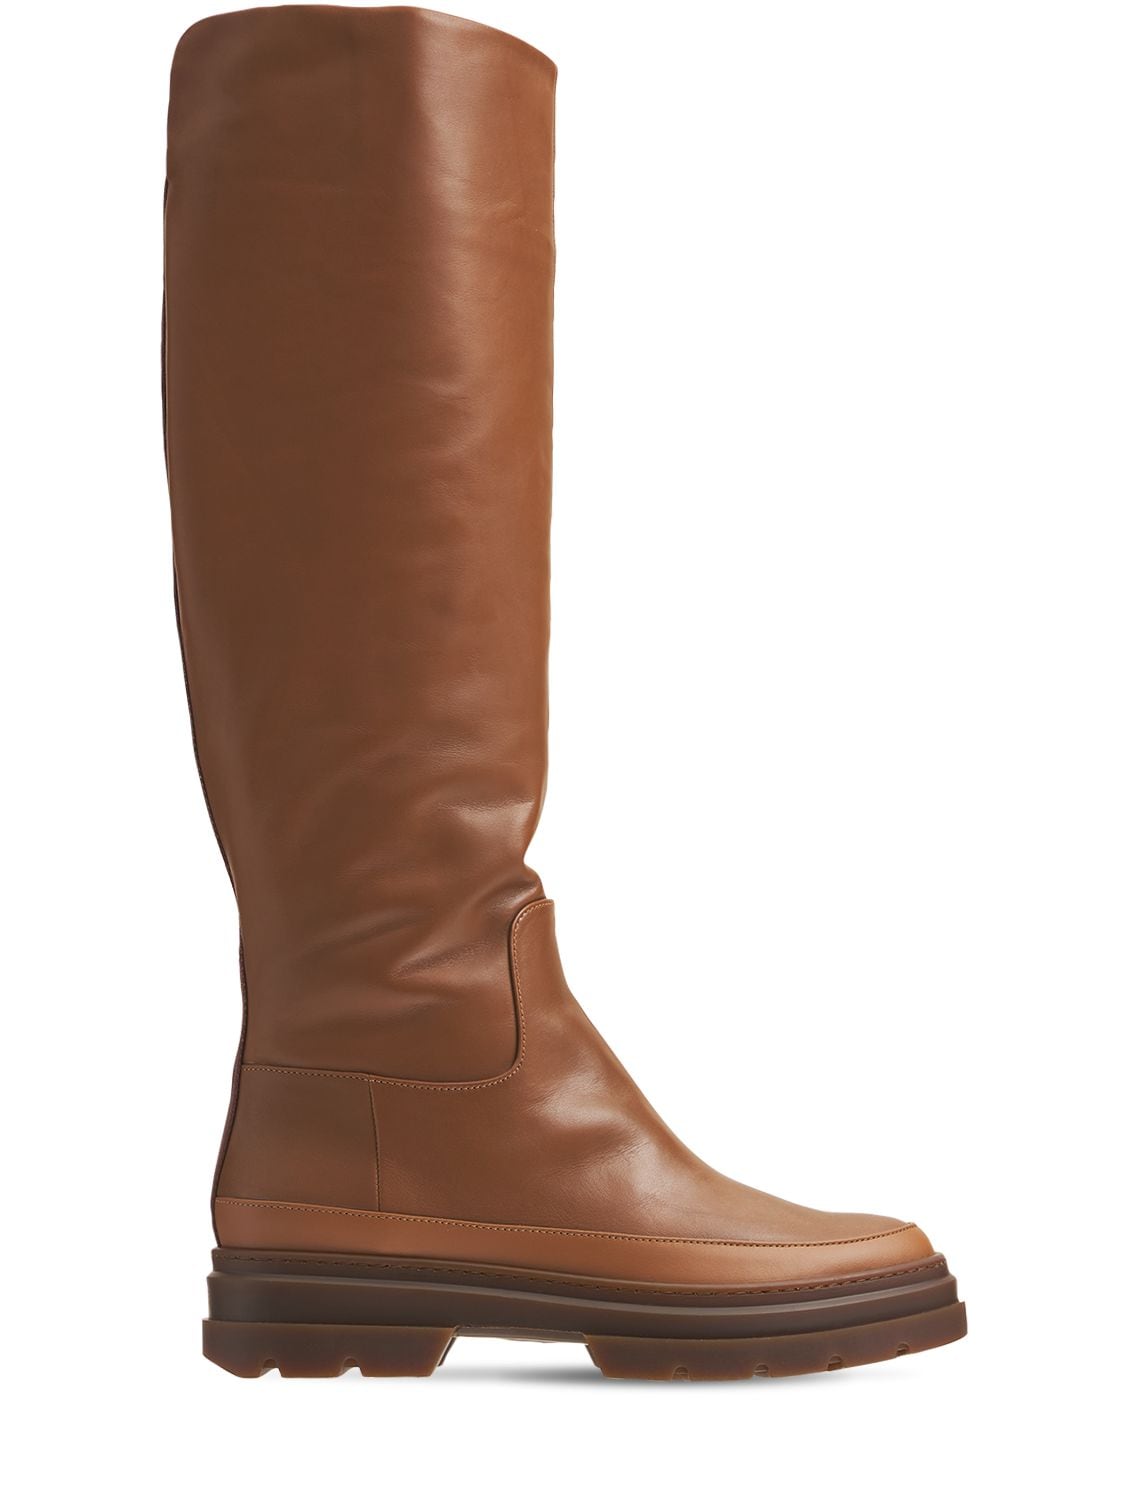 MAX MARA 50mm Beryl Leather Tall Boots